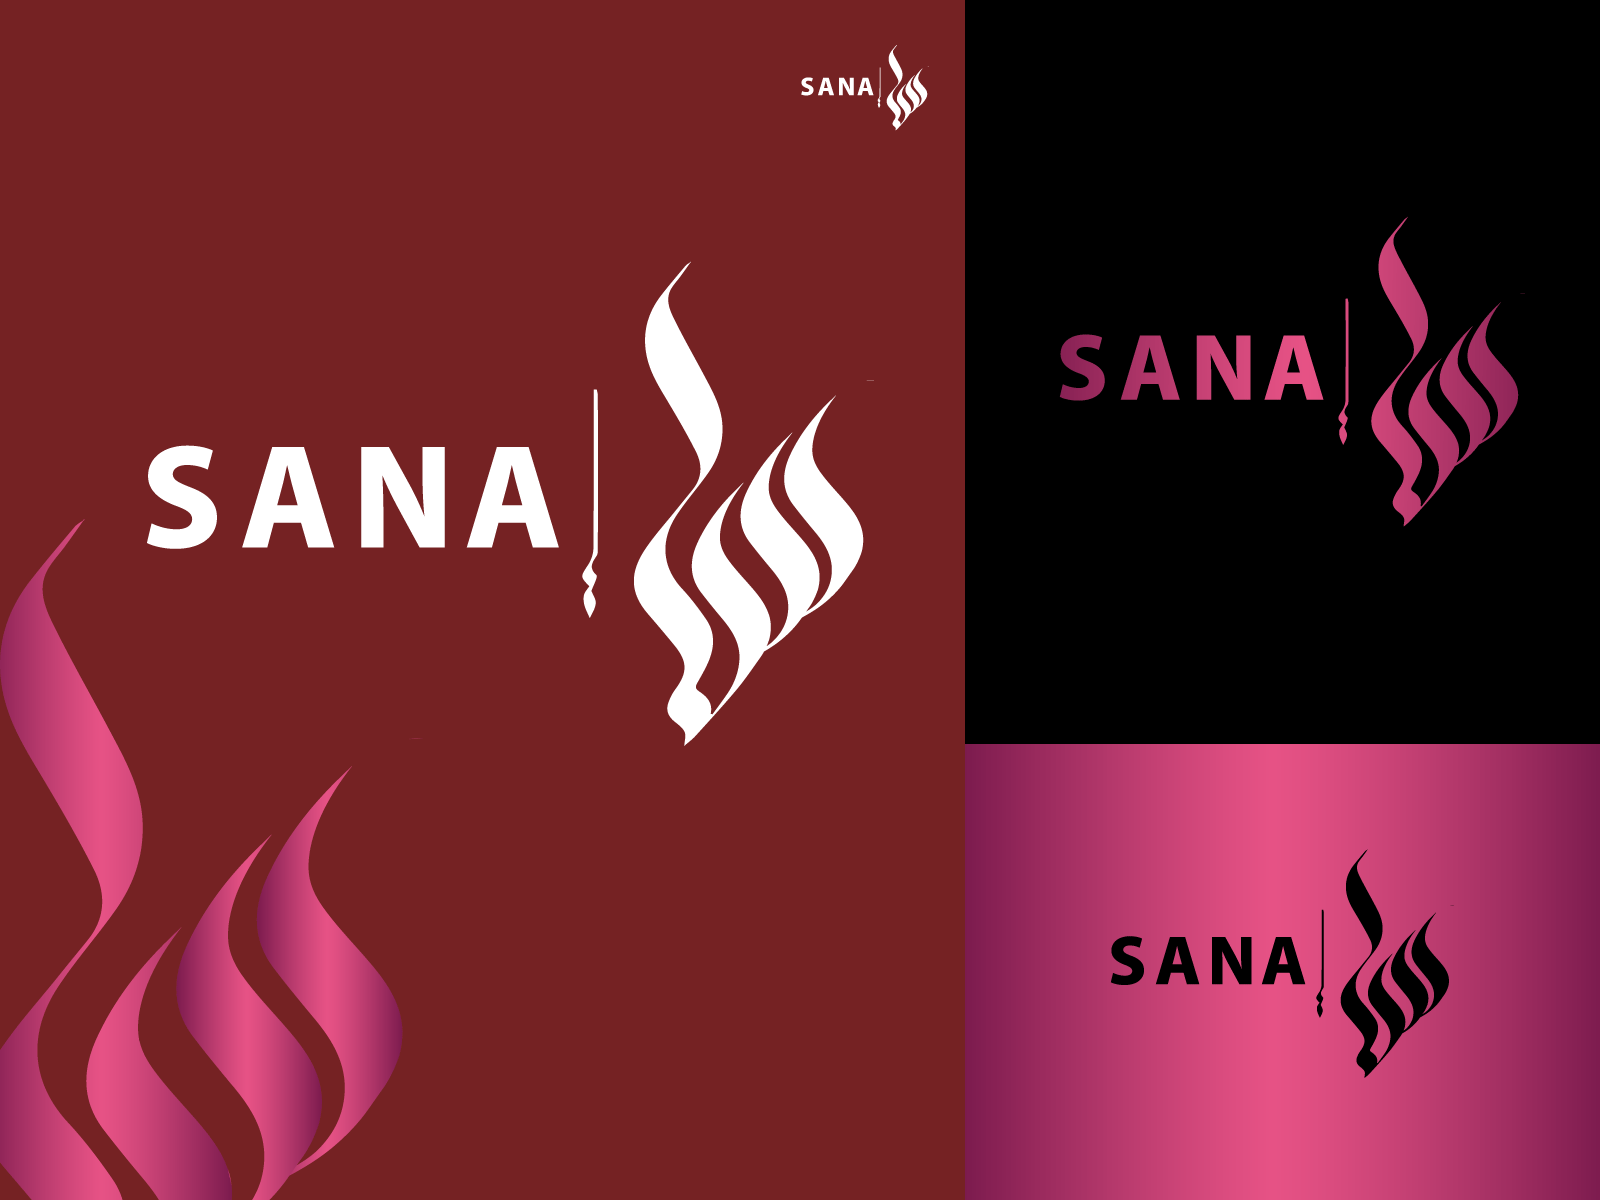 SANA arabic logo arabic typography brand identity branding icon illustration indentity logo logo design